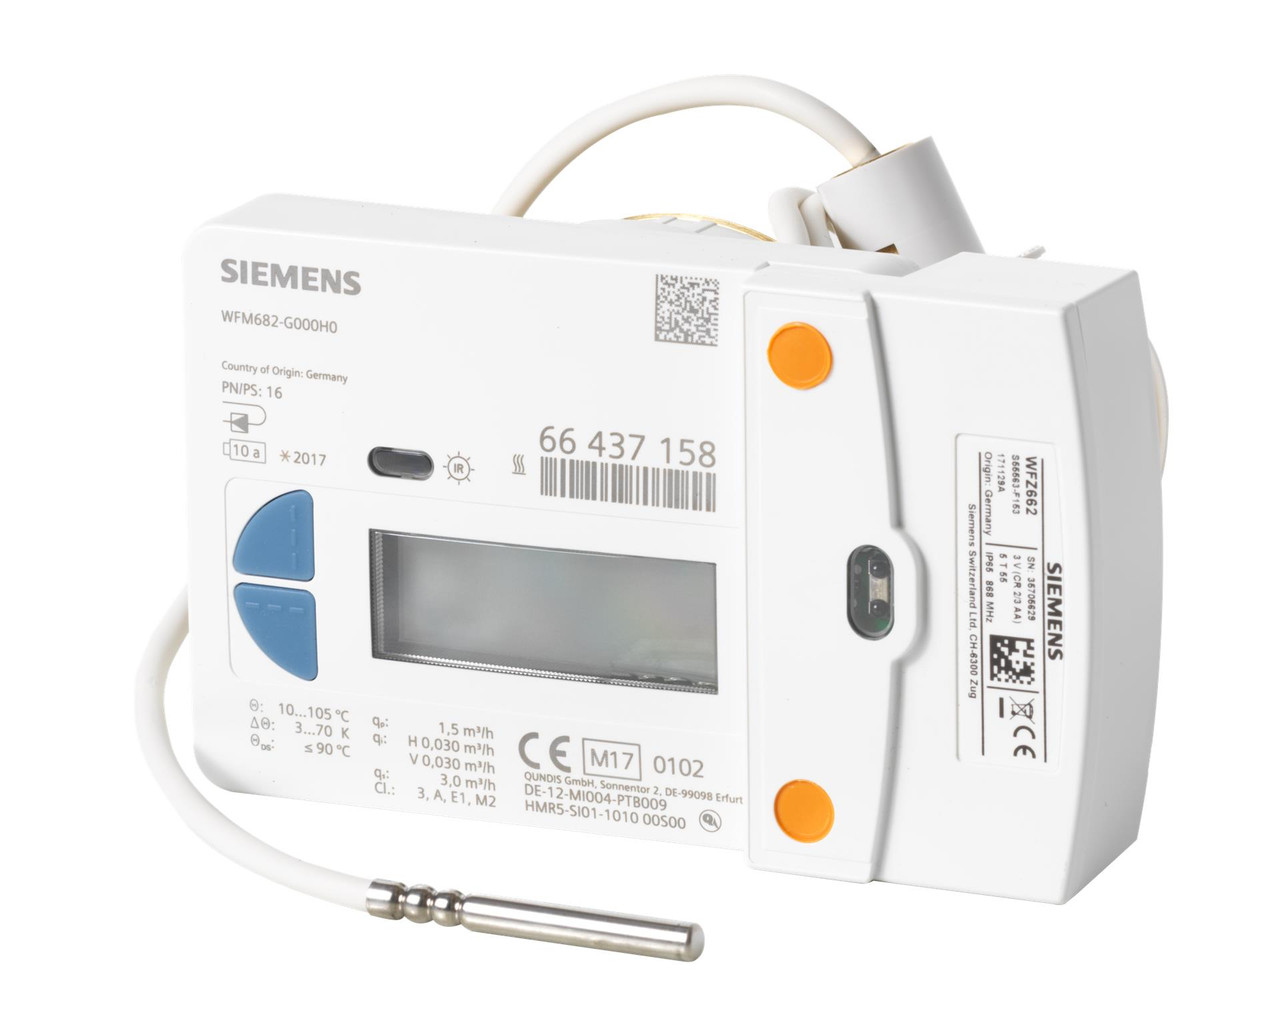 Siemens WFM683-L000H0, S55561-F262 RF heat meter set